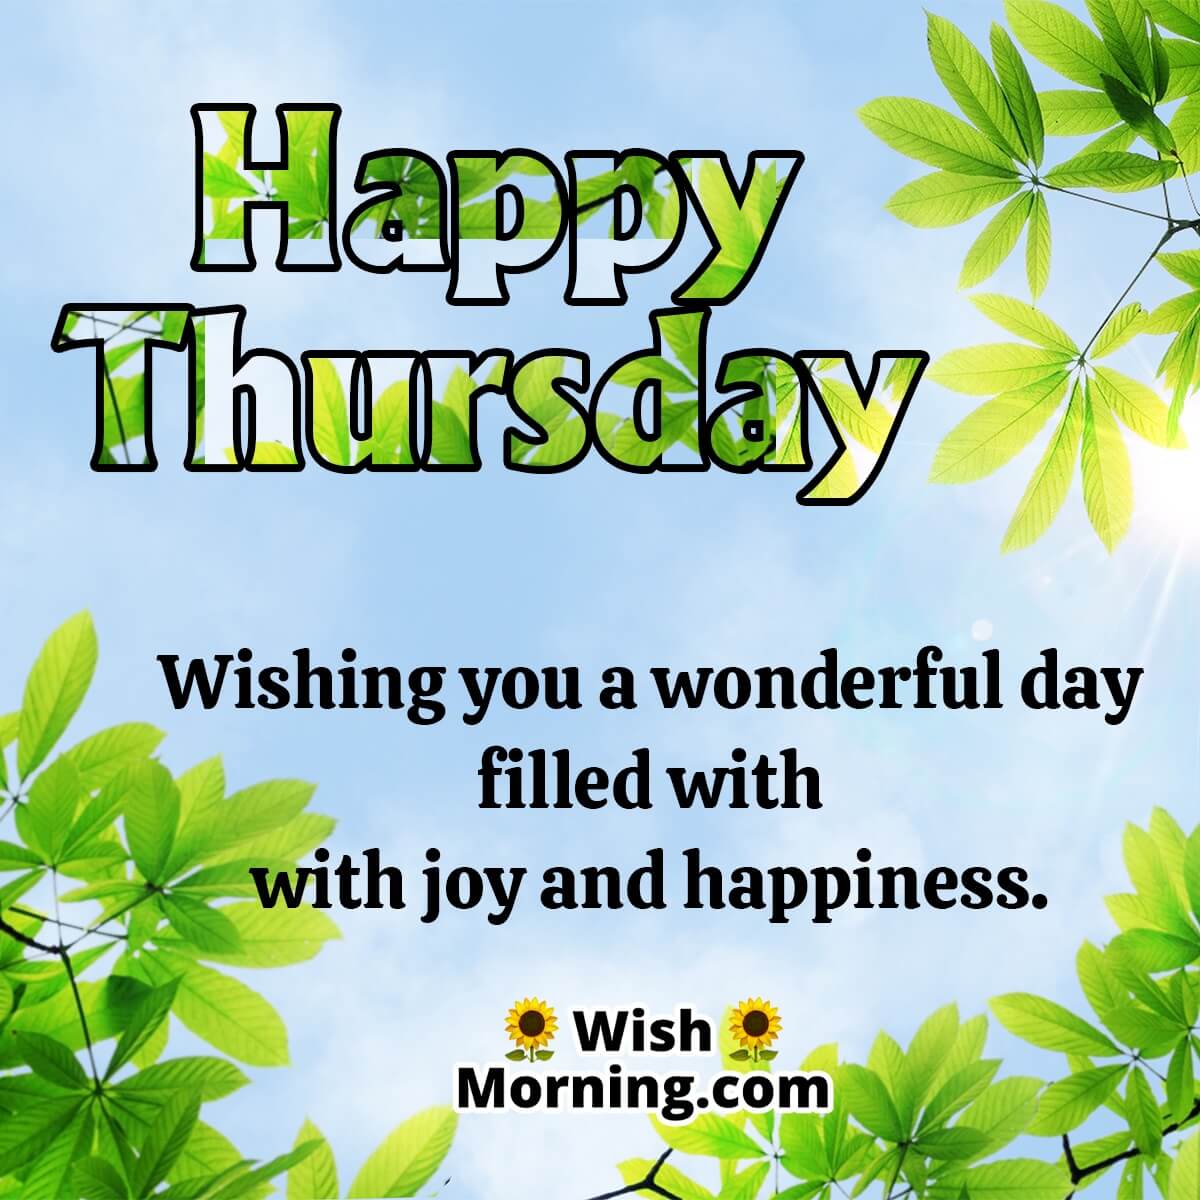 Wishing Wonderful Thursday